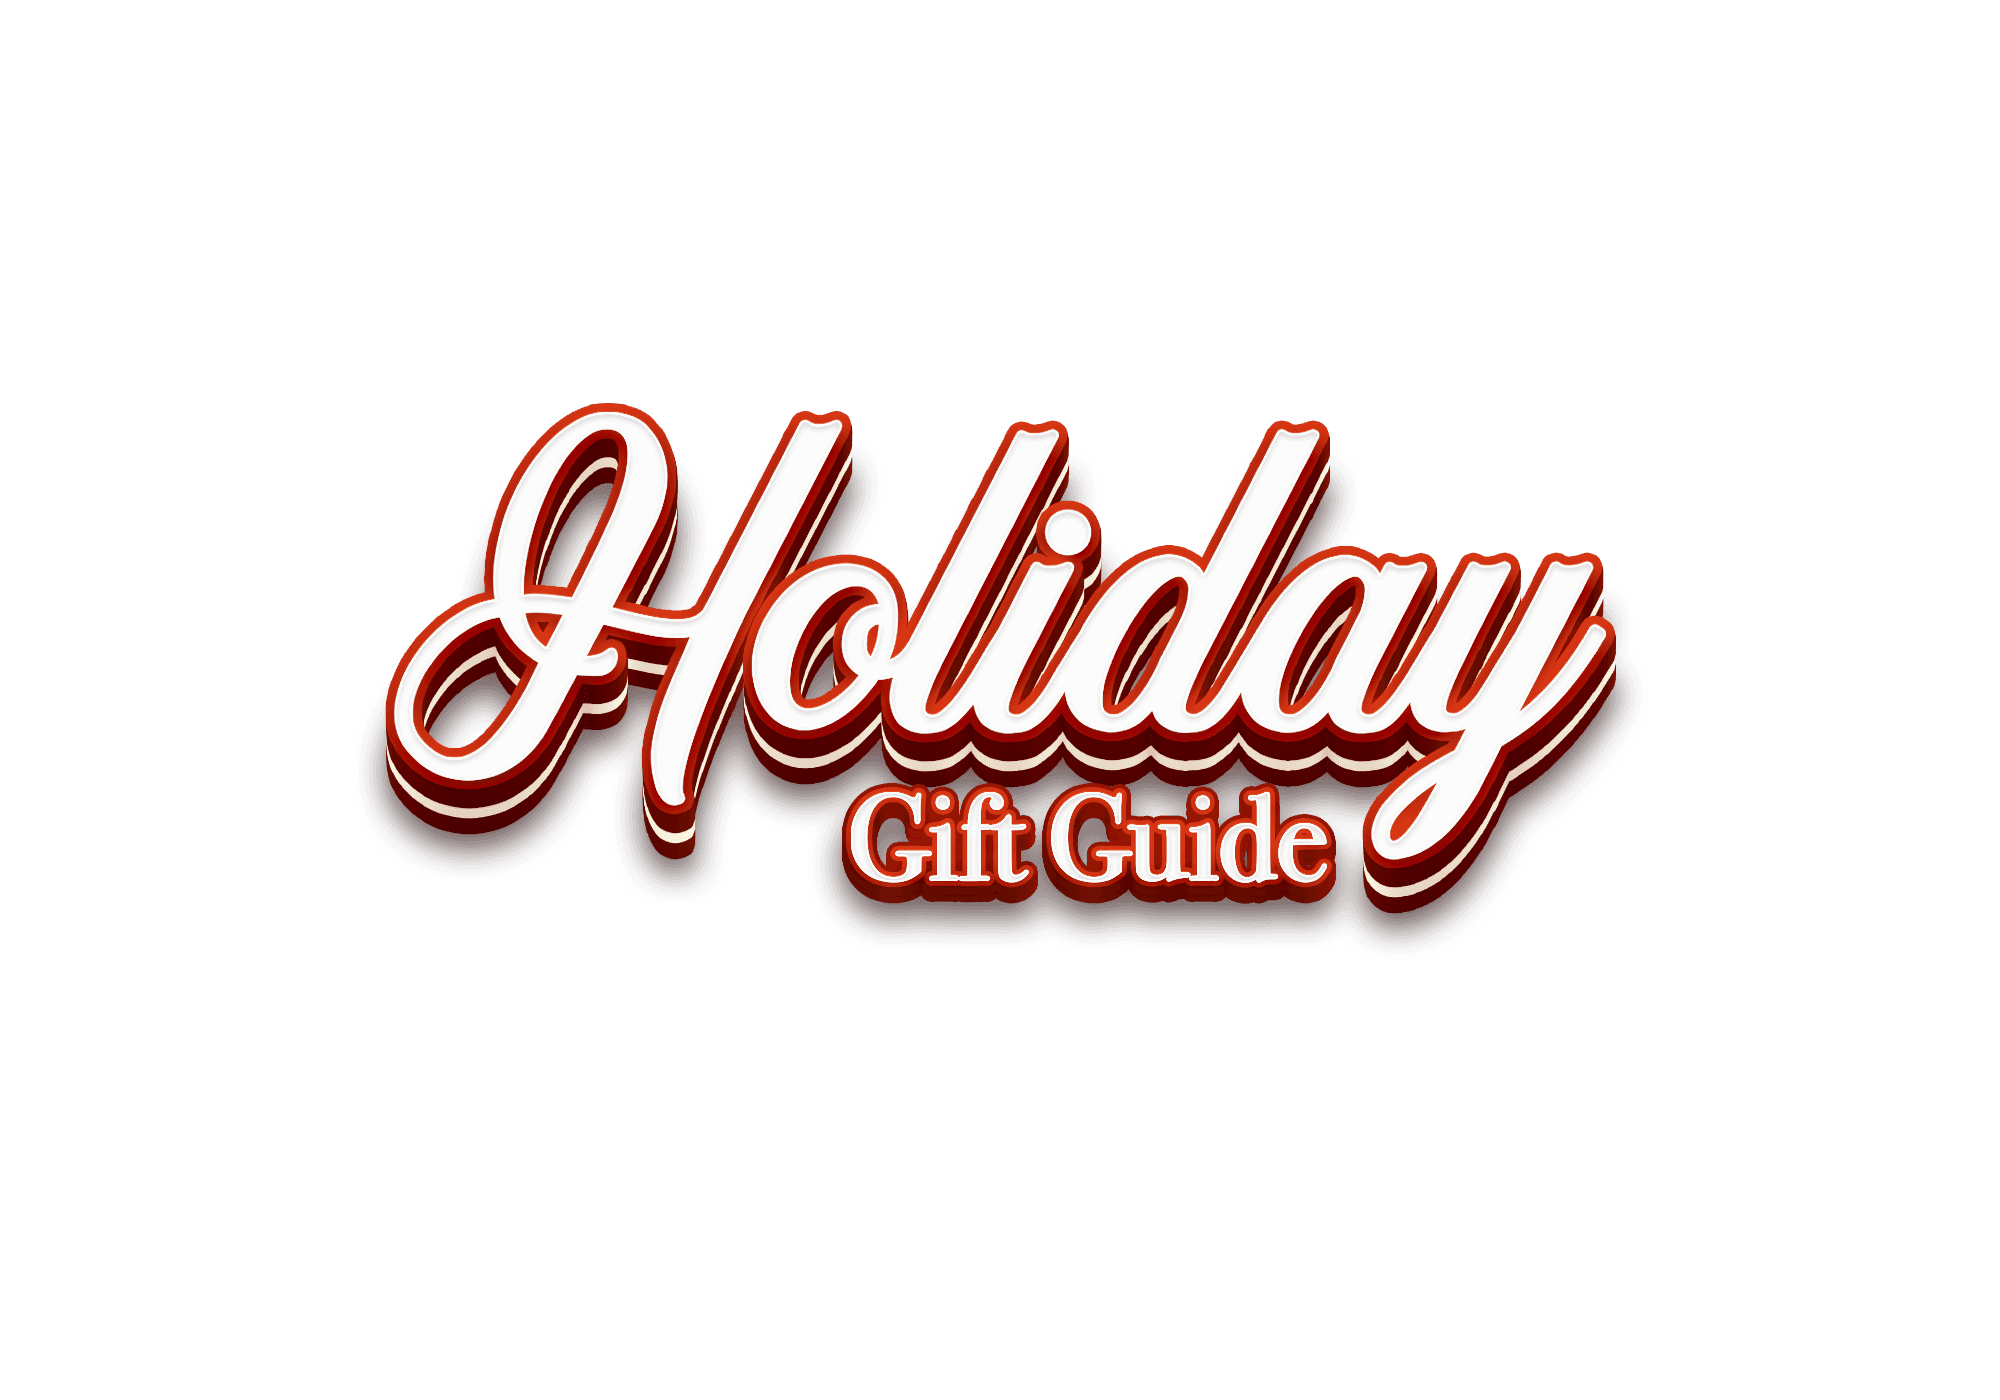 Gift Guide Logo